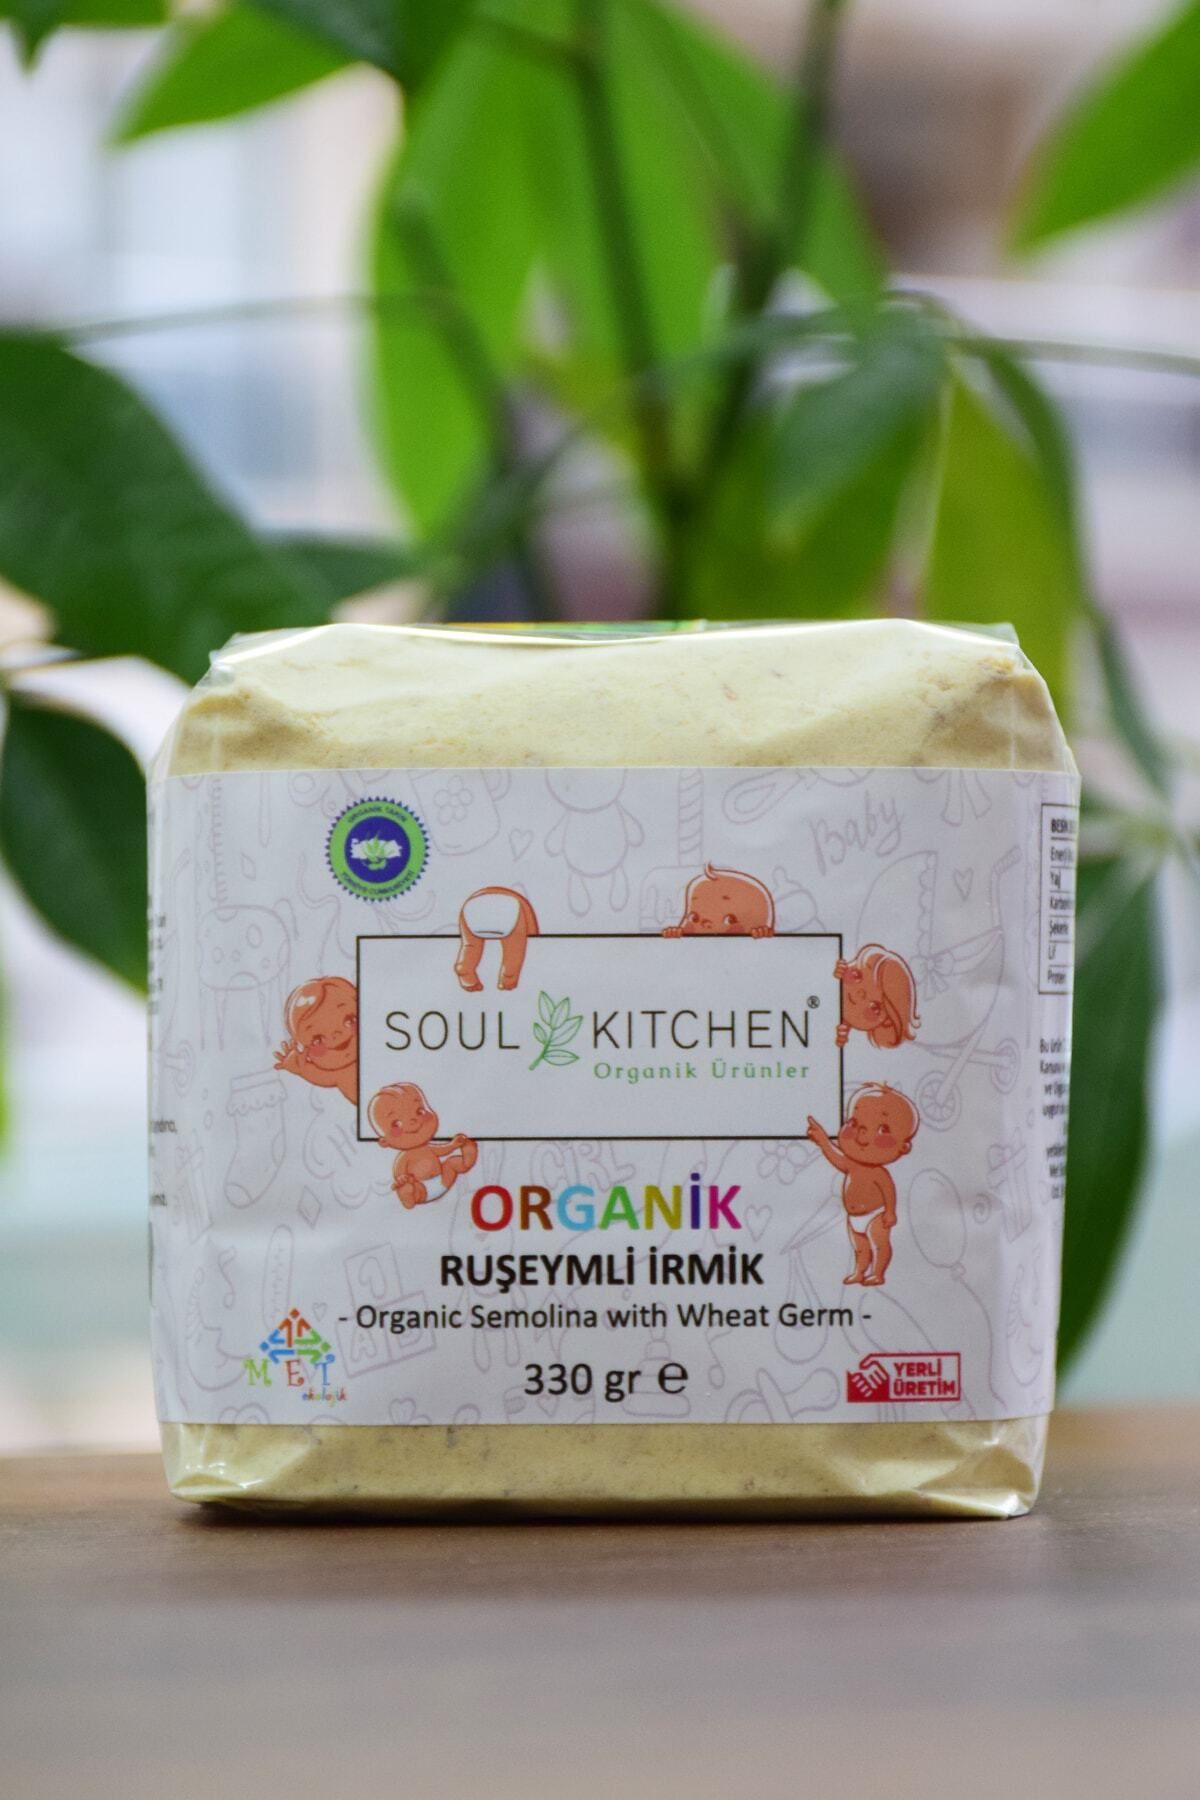 Soul Kitchen Organik Ürünler Organik Bebek Ruşeymli Irmik 330gr - Eko Paket